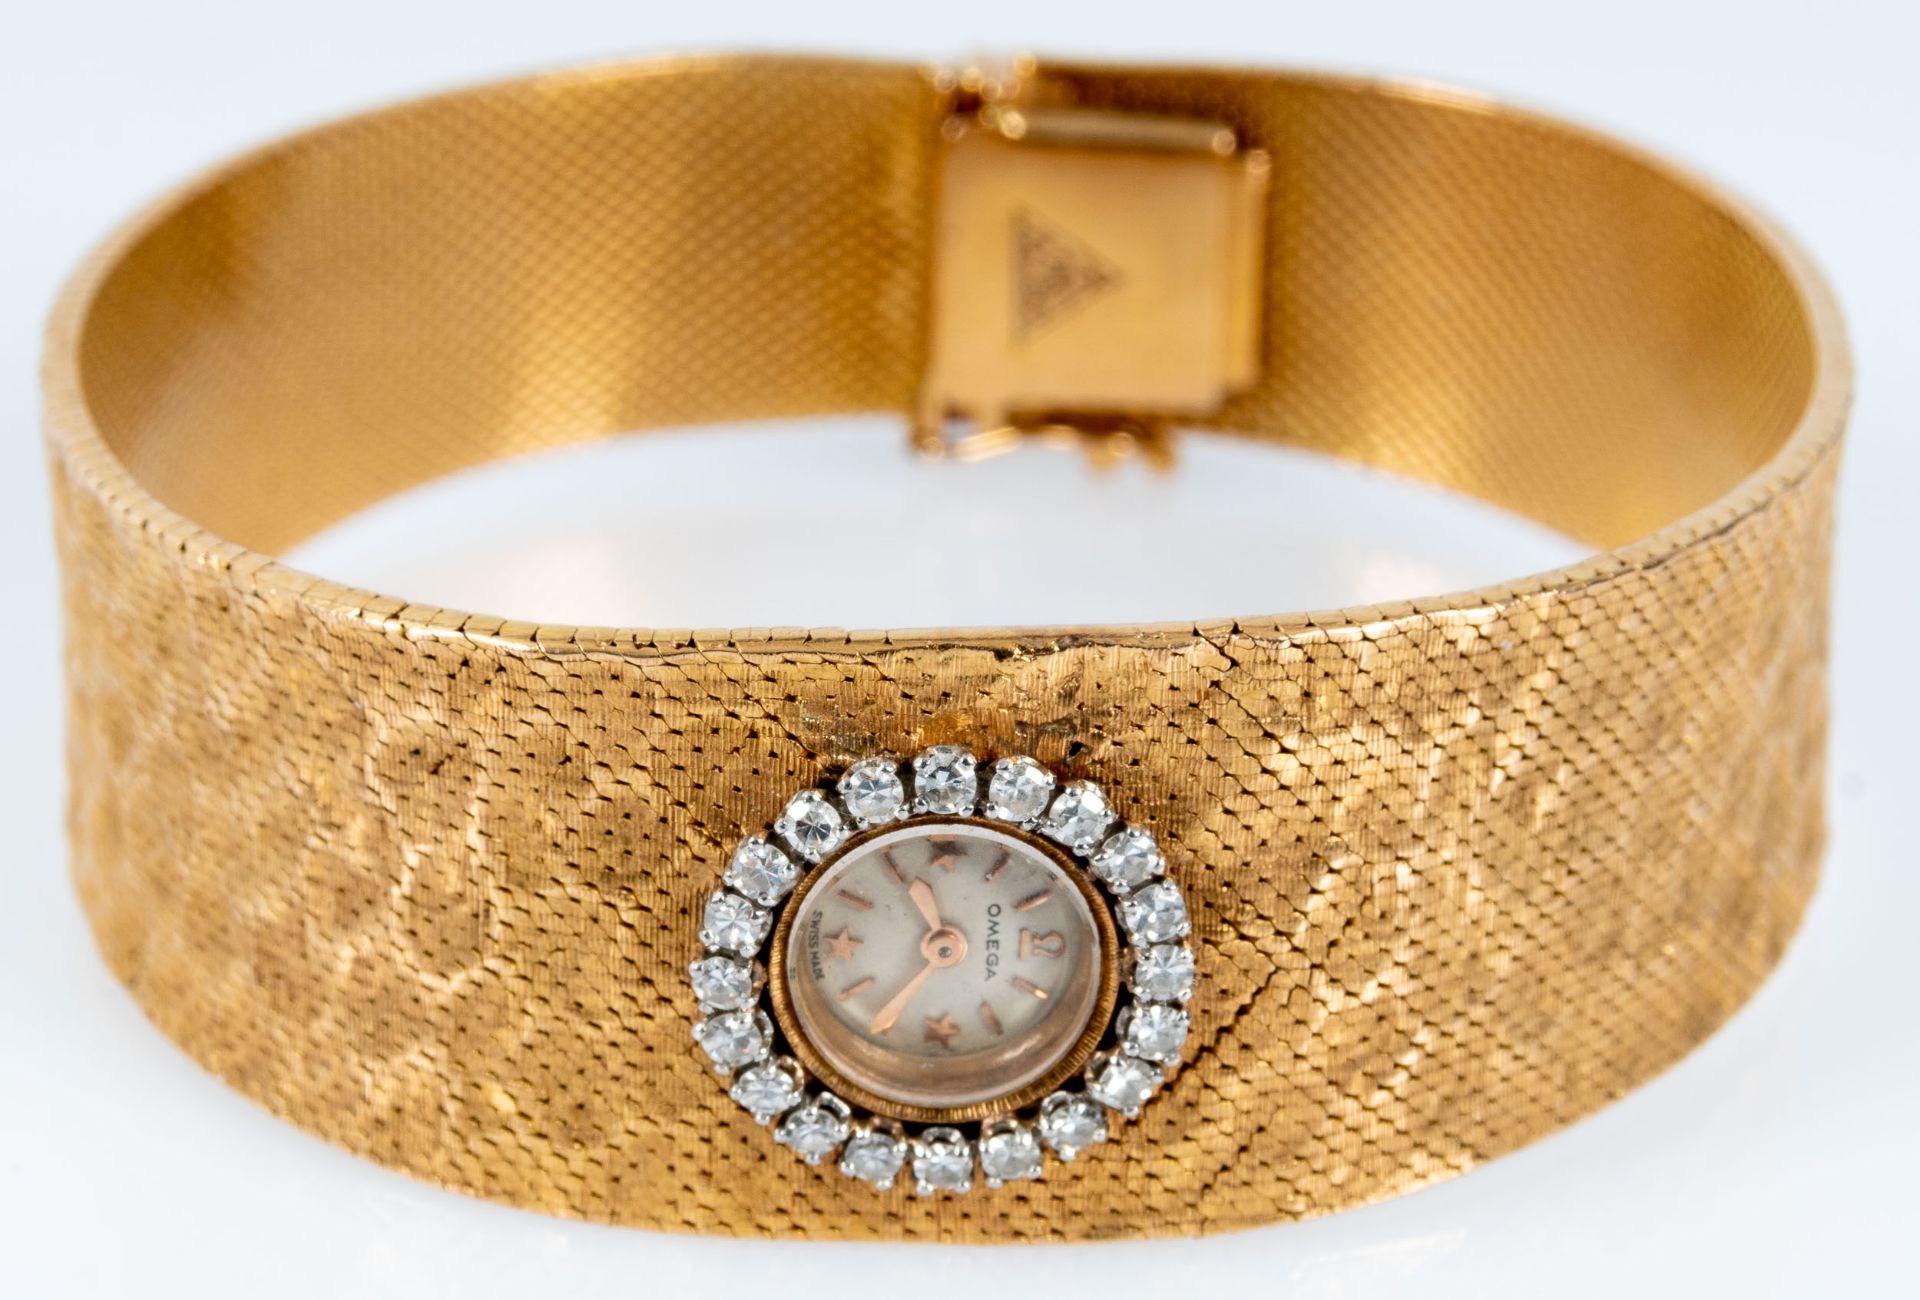 Außergewöhnliche Damen- Armbanduhr, das zur Mitte hin breiter werdende, in Hammerschlagoptik gearbe - Bild 3 aus 11